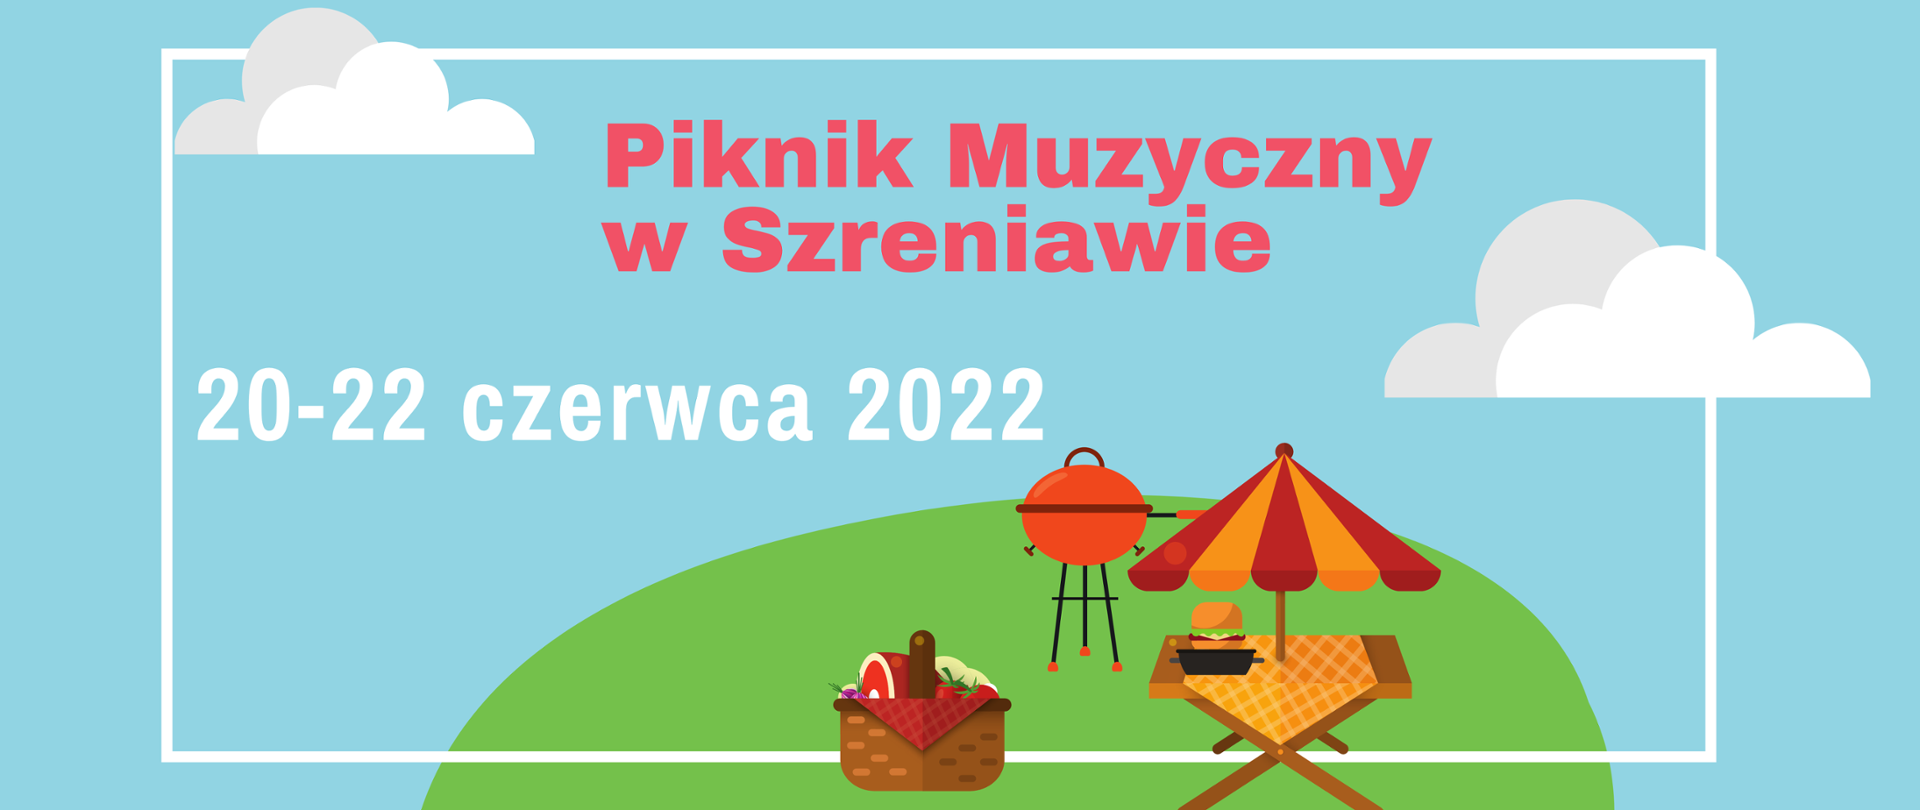 Baner na błękitnym tle. U dołu grafika, stolik, parasol, grill i kosz piknikowy. Tekst: /"Piknik Muzyczny w Szreniawie. 20-22 czerwca 2022"/